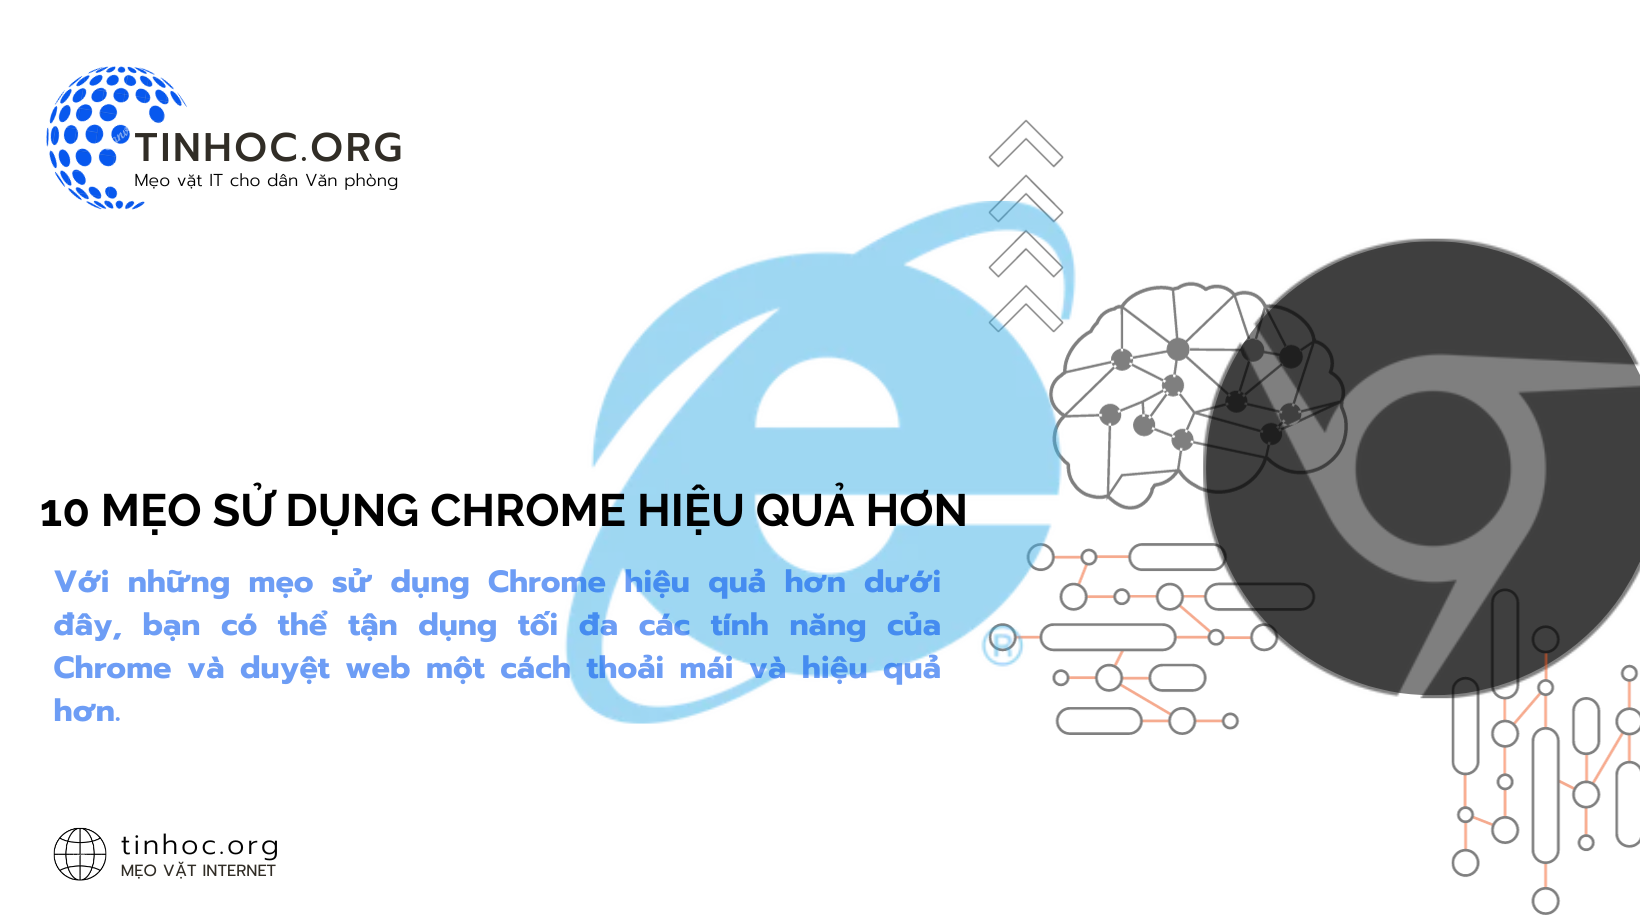 Với những mẹo sử dụng Chrome hiệu quả hơn dưới đây, bạn có thể tận dụng tối đa các tính năng của Chrome và duyệt web một cách thoải mái và hiệu quả hơn.